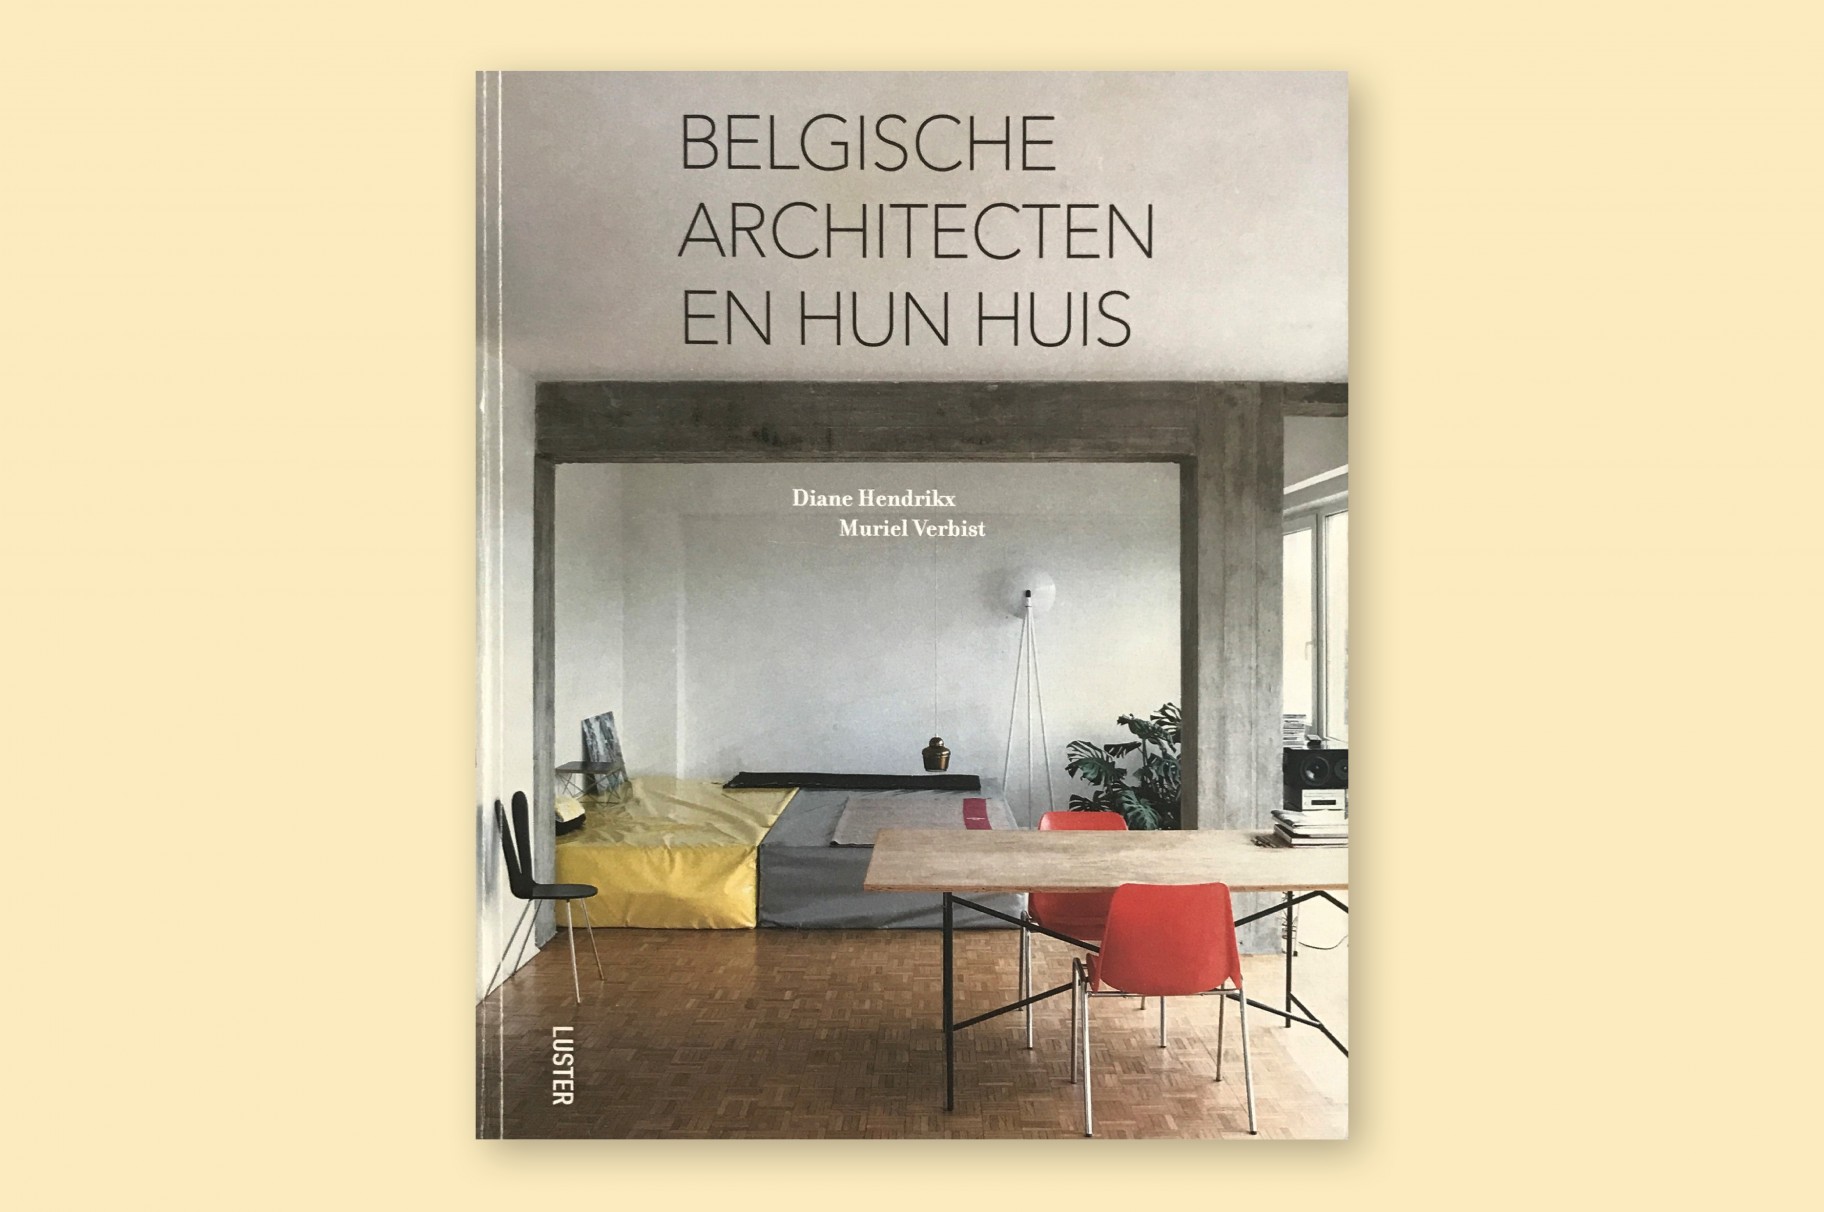 House Deboutte in book Belgische architecten en hun huis